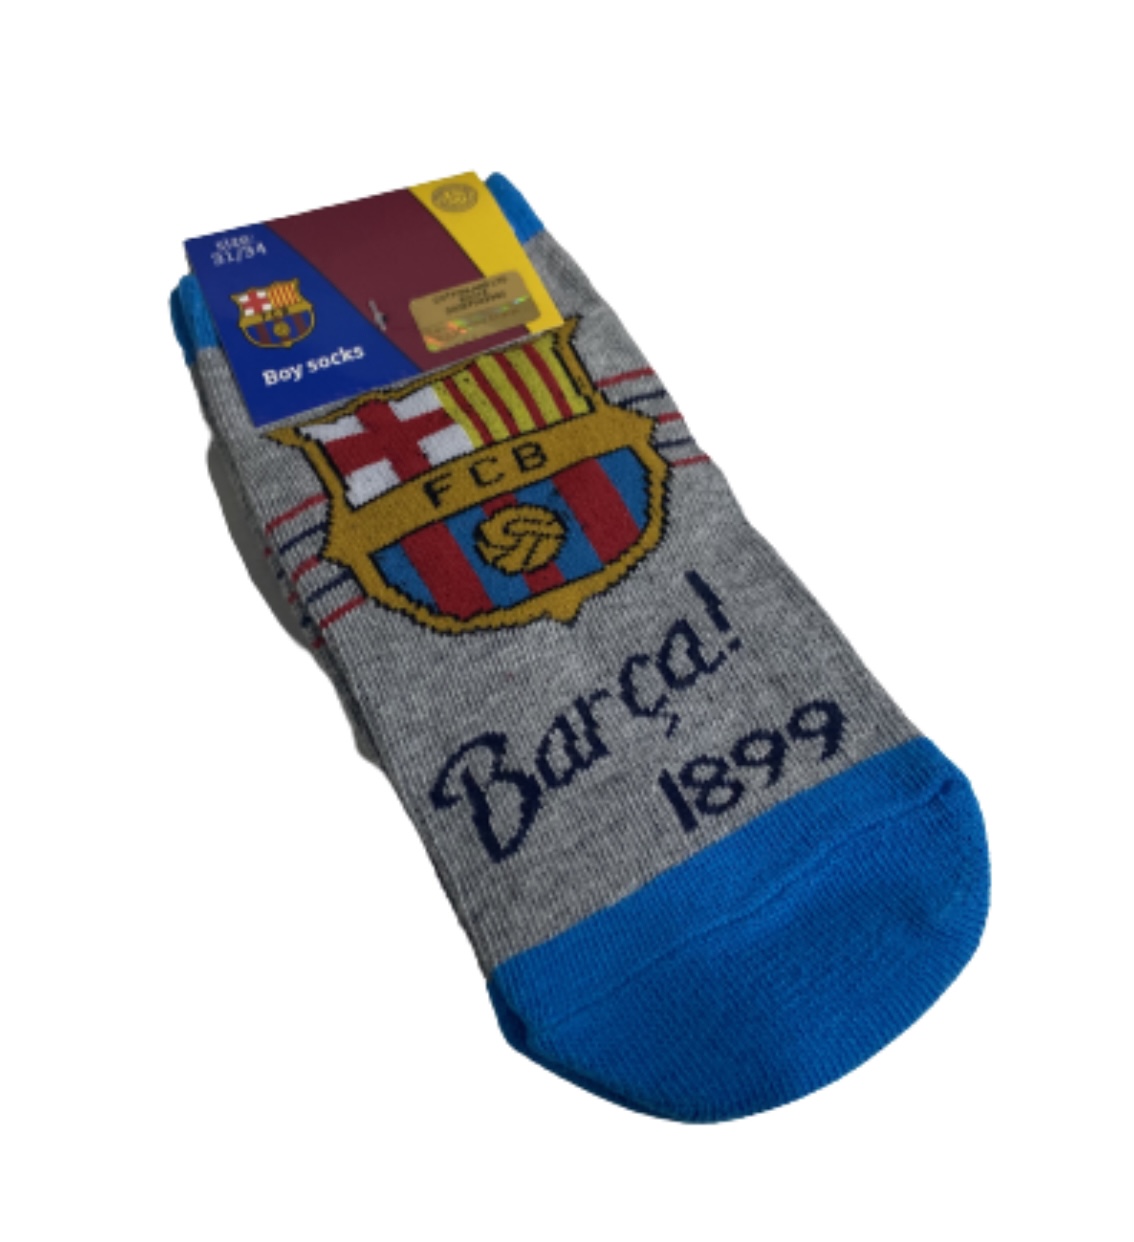 FC Barcelona strumpor från Smallstars.se